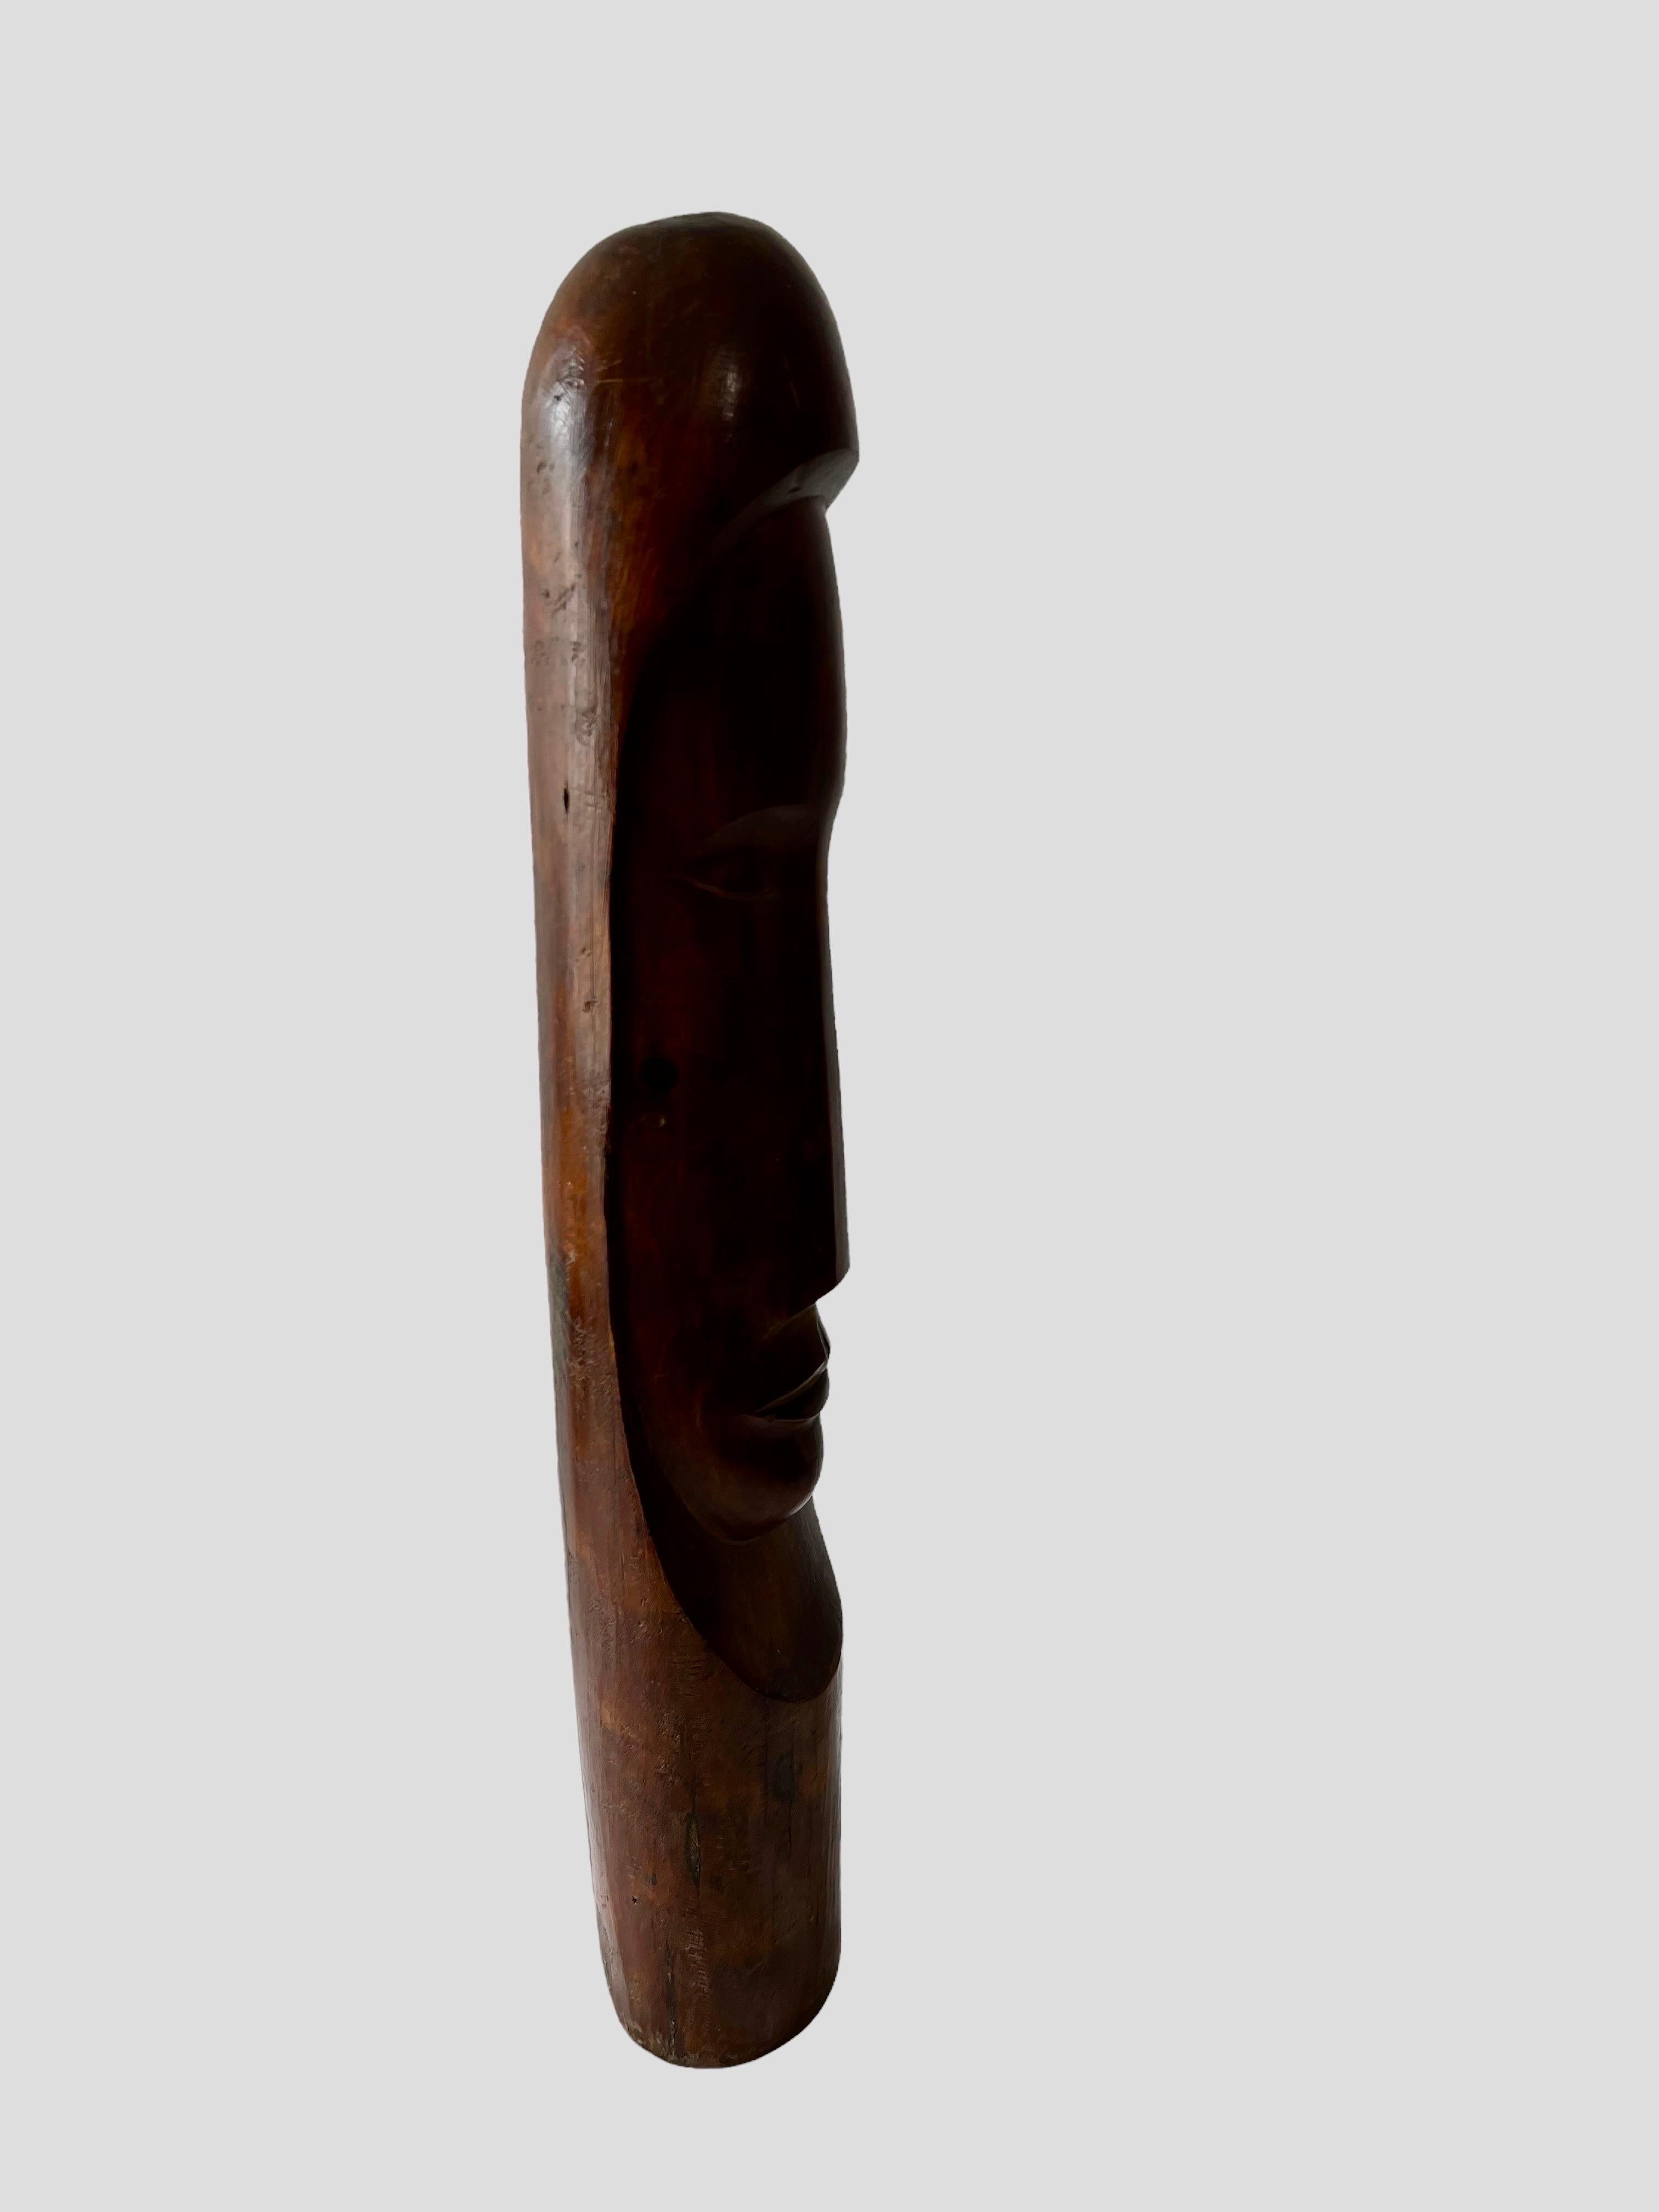 Cuban Master Florencio Gelabert Sculpture Large Wood Carving Bust Man Portrait For Sale 2